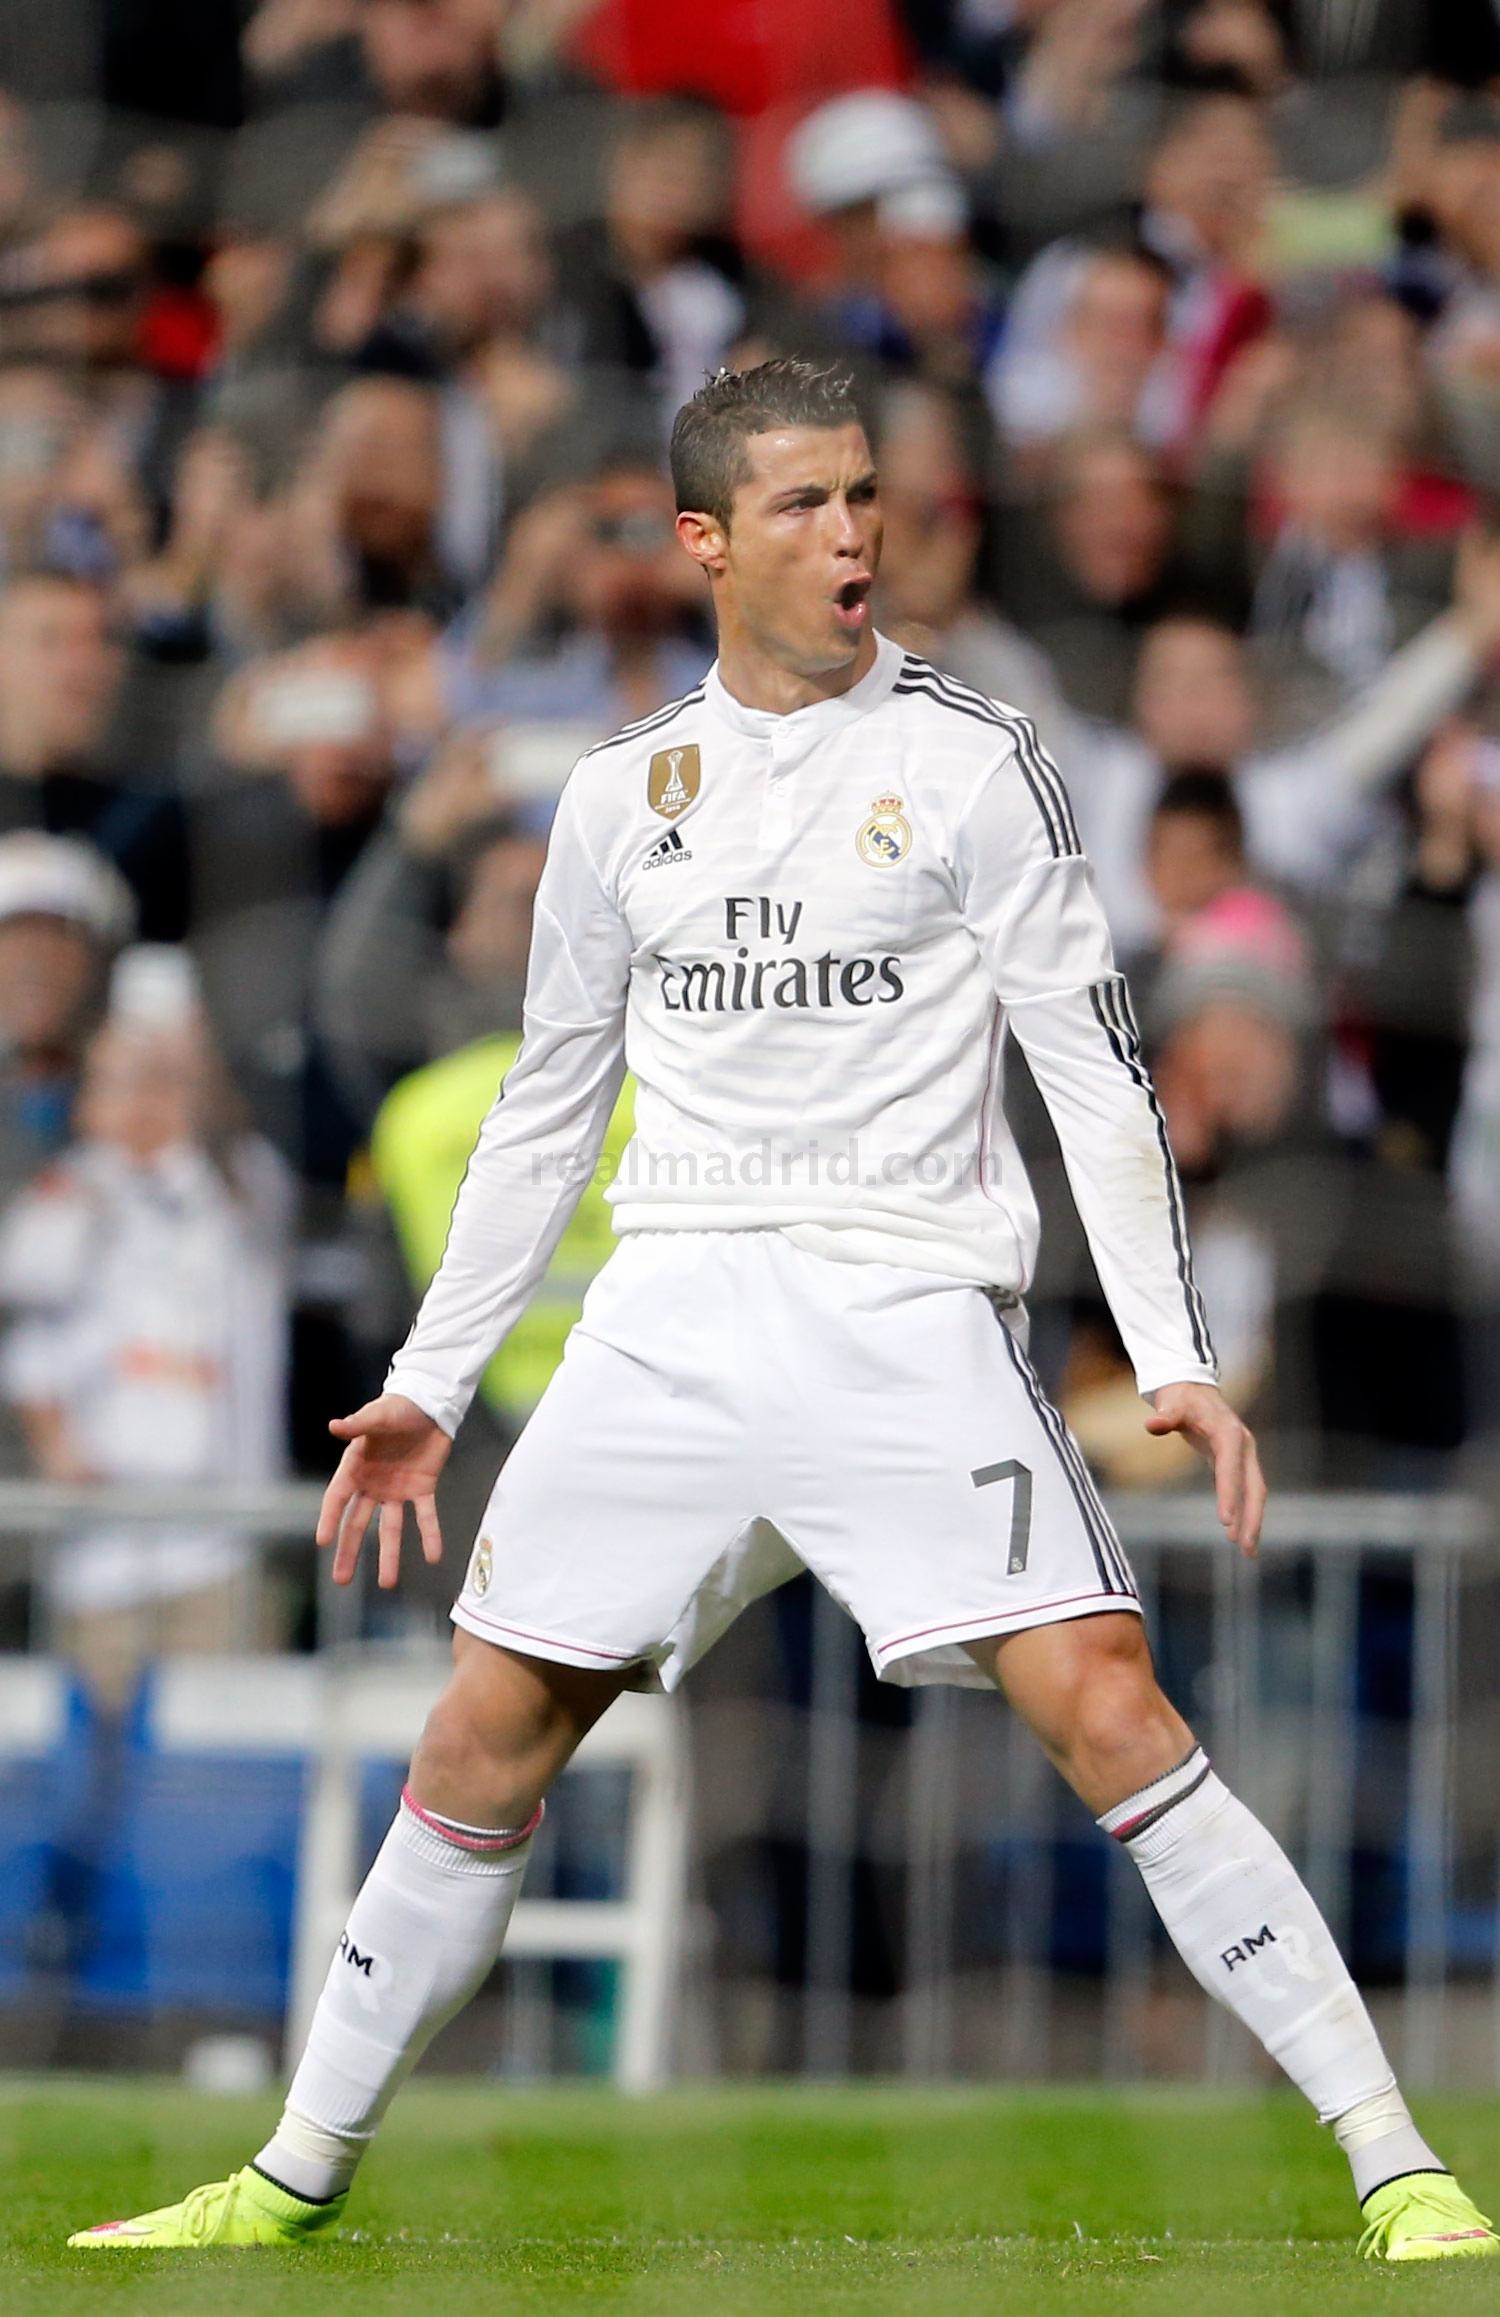 Hãy ngắm hình nền Ronaldo ăn mừng của chàng cầu thủ tài năng này. Anh ấy đã có nhiều khoảnh khắc đầy cảm xúc trong suốt sự nghiệp. Sự nhiệt tình của Ronaldo trong bóng đá đã thu hút rất nhiều người hâm mộ và hình nền này sẽ làm bạn cảm thấy vui vẻ khi nhìn thấy khi chàng ăn mừng vô địch.